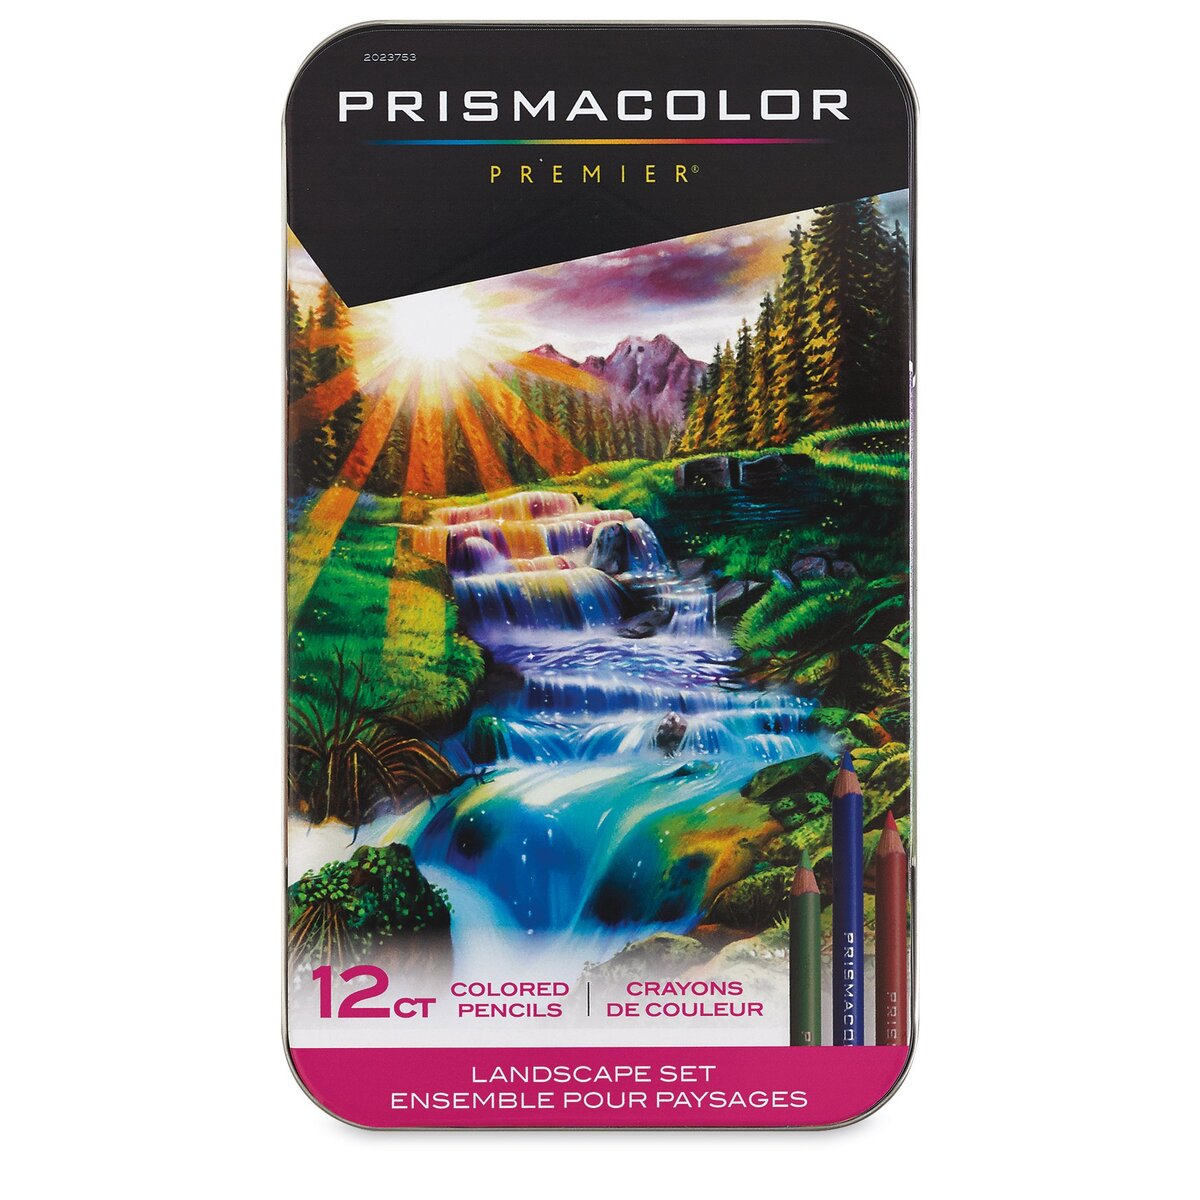 Prismacolor Premier Colored Pencils Set of 72